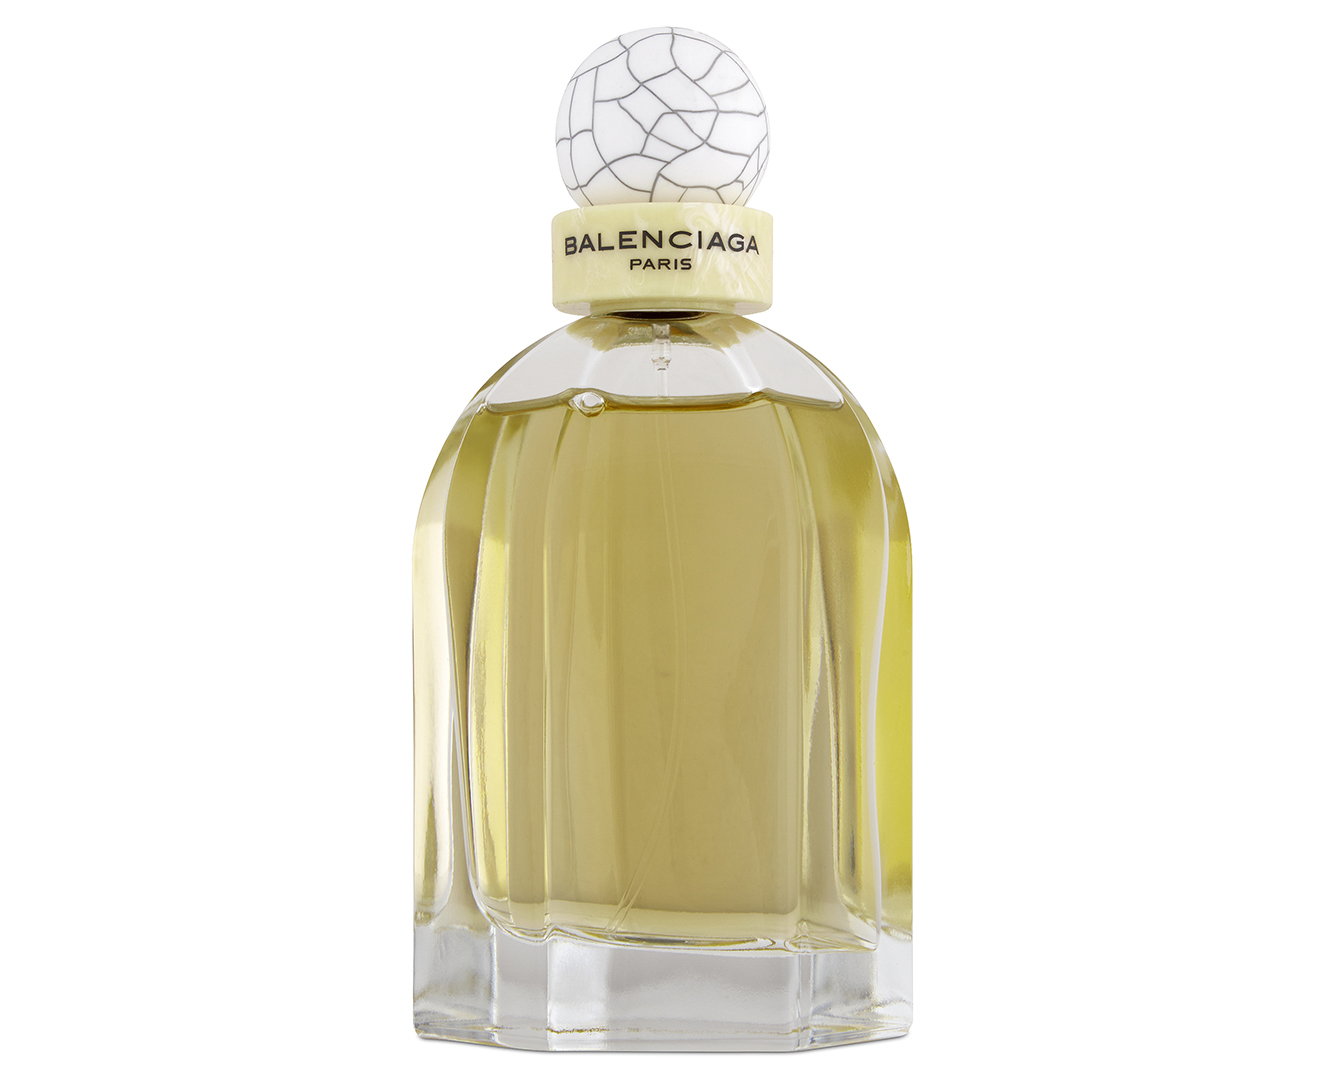 B Balenciaga Balenciaga perfume  a fragrance for women 2014